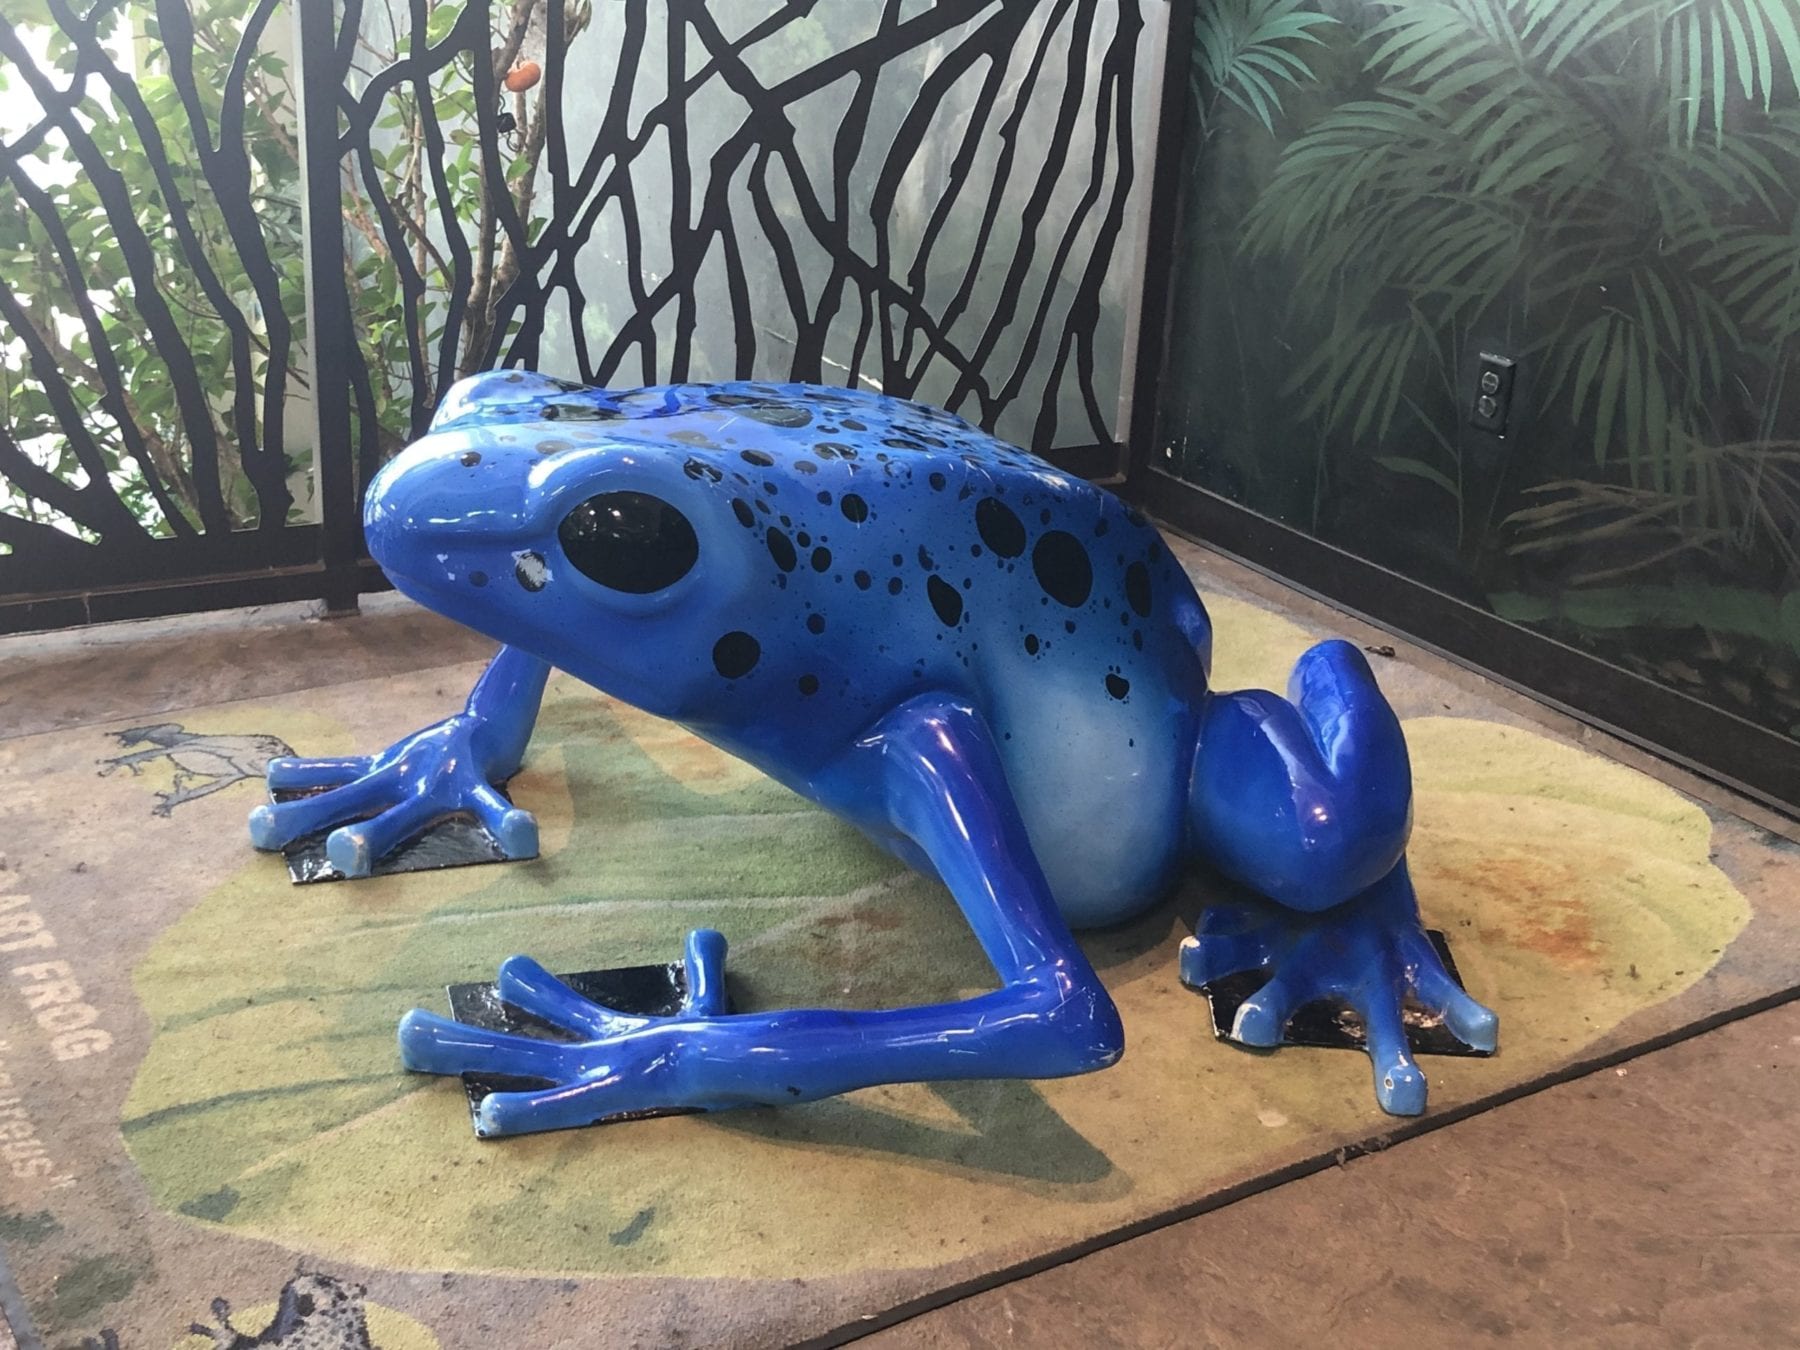 Spotted Frog Aquarium